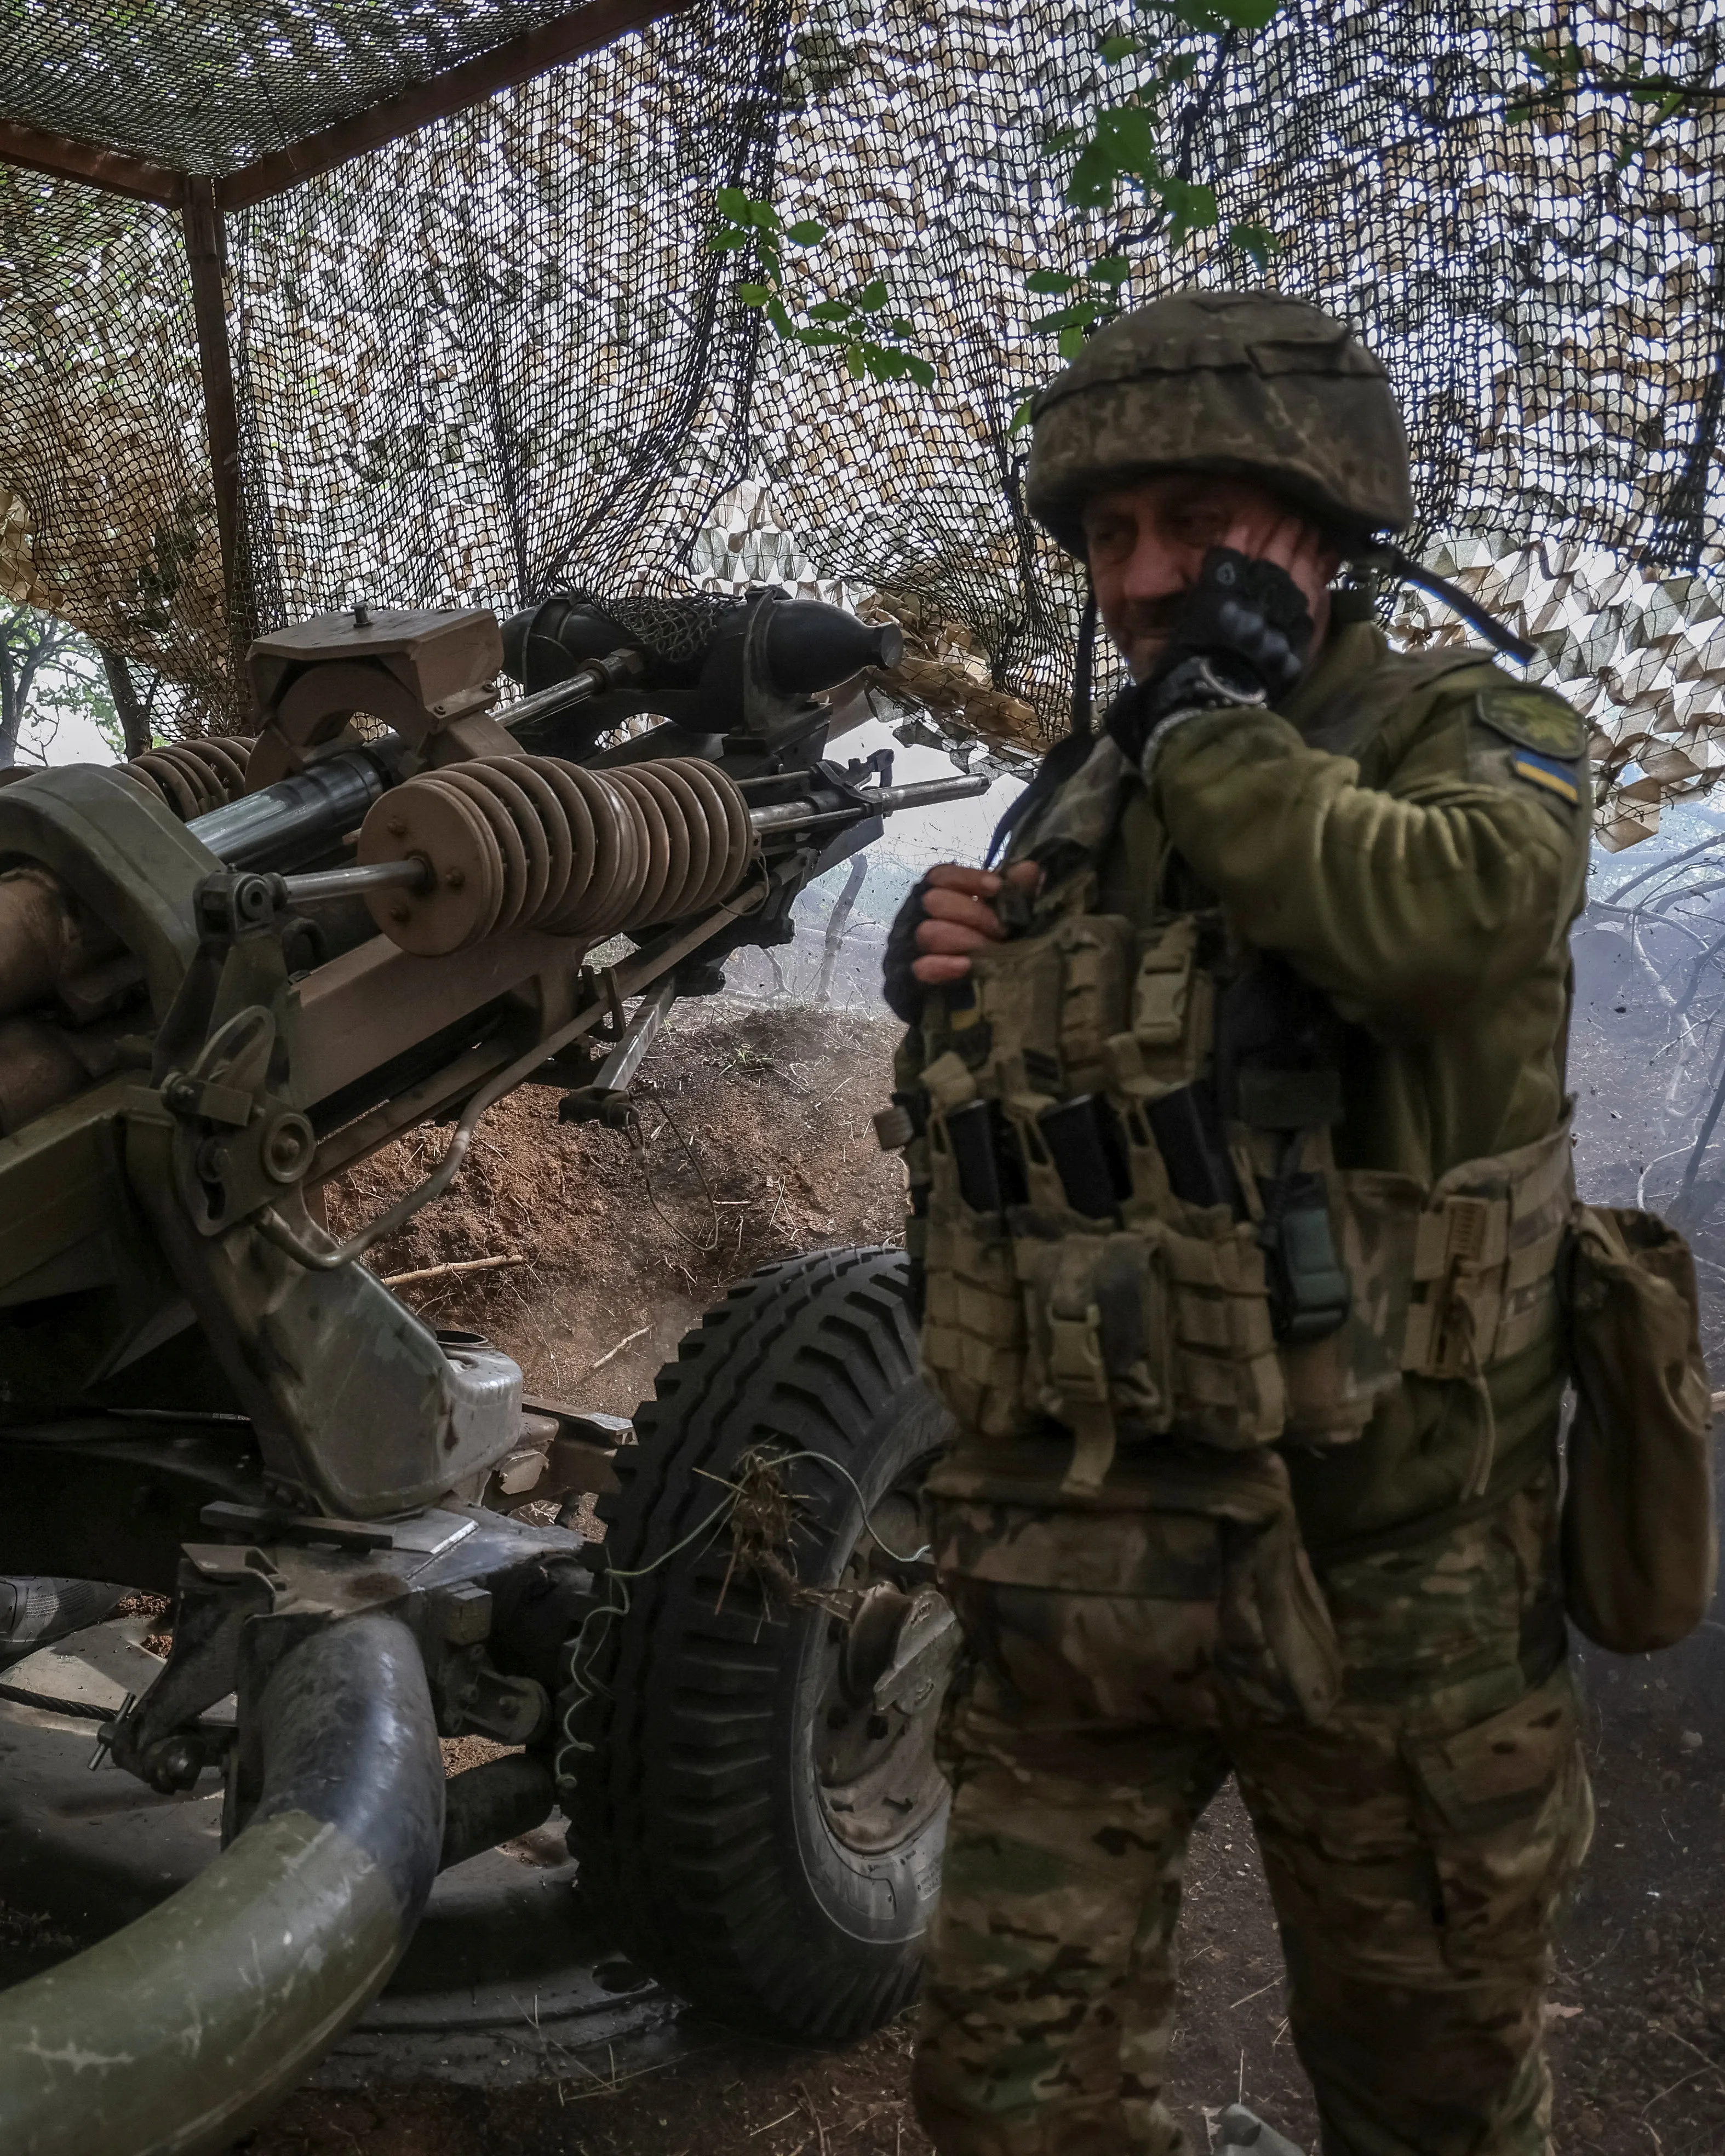 Situace na frontě se zhoršuje, varoval Syrskyj. Rusko mluví o průlomu ukrajinské obrany